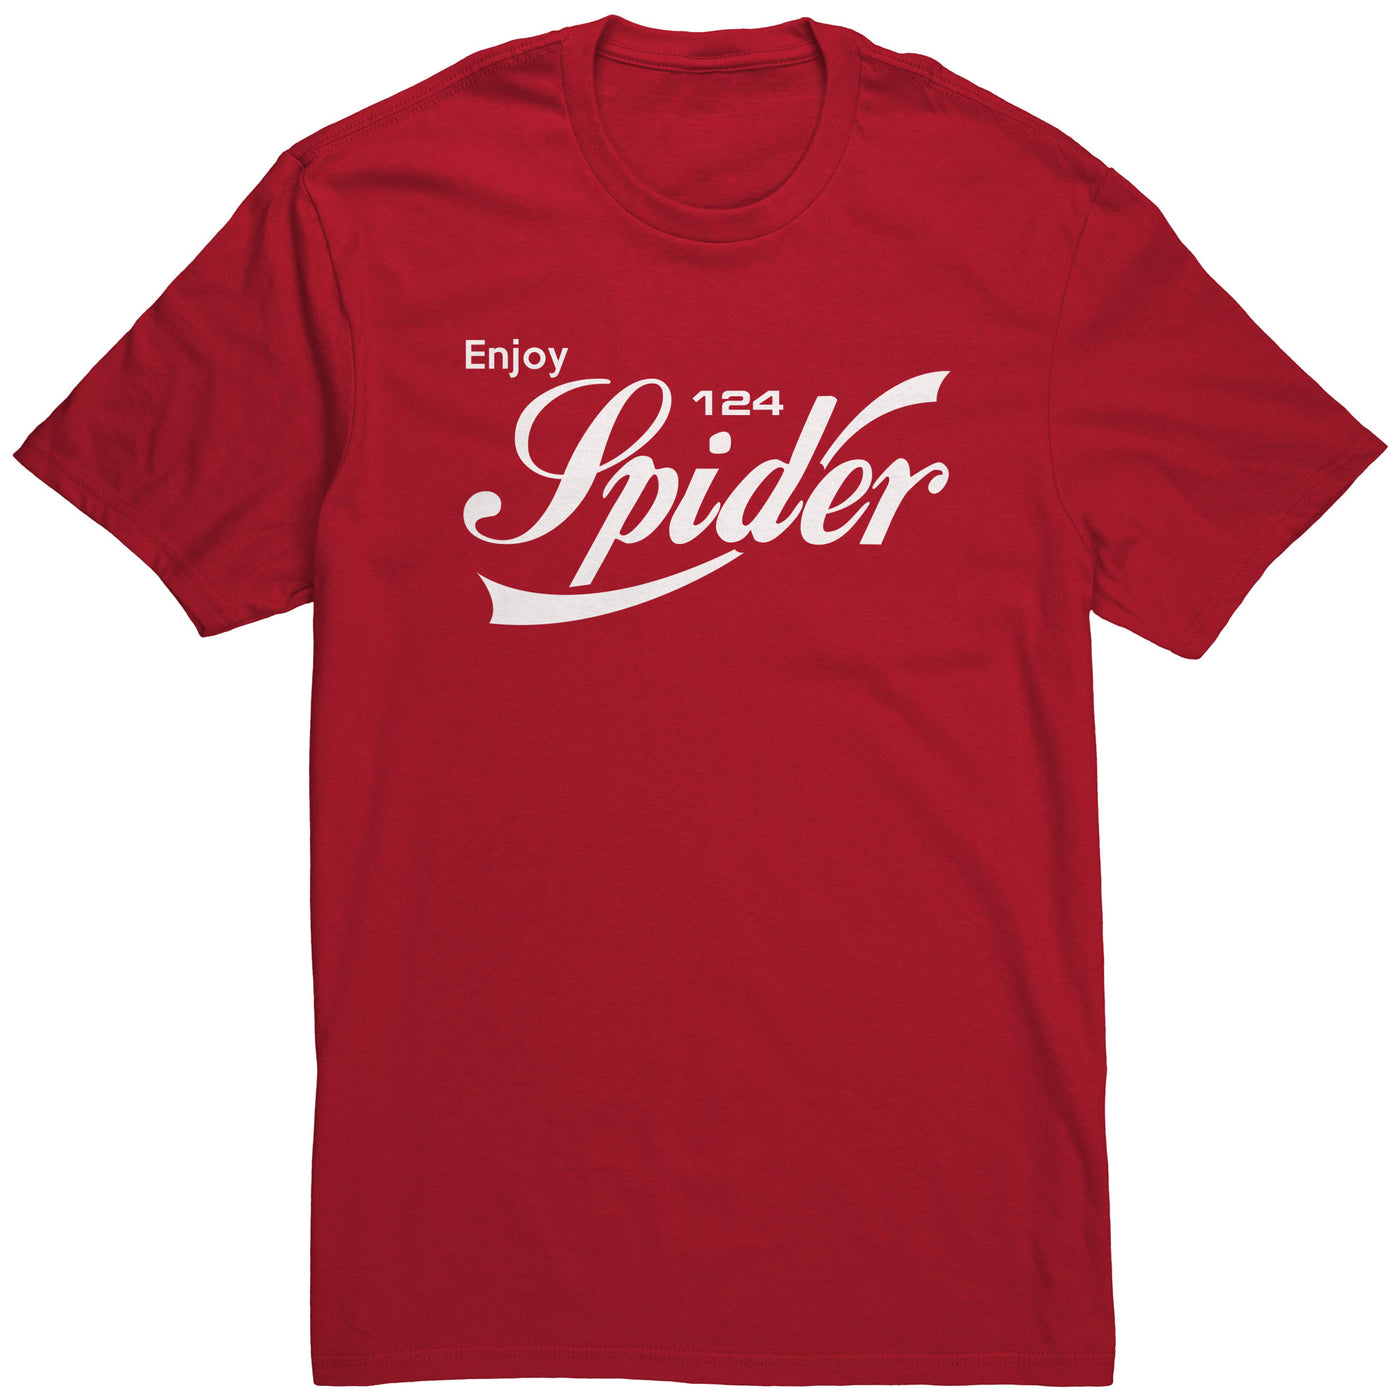 enjoy-124-spider-shirt-red